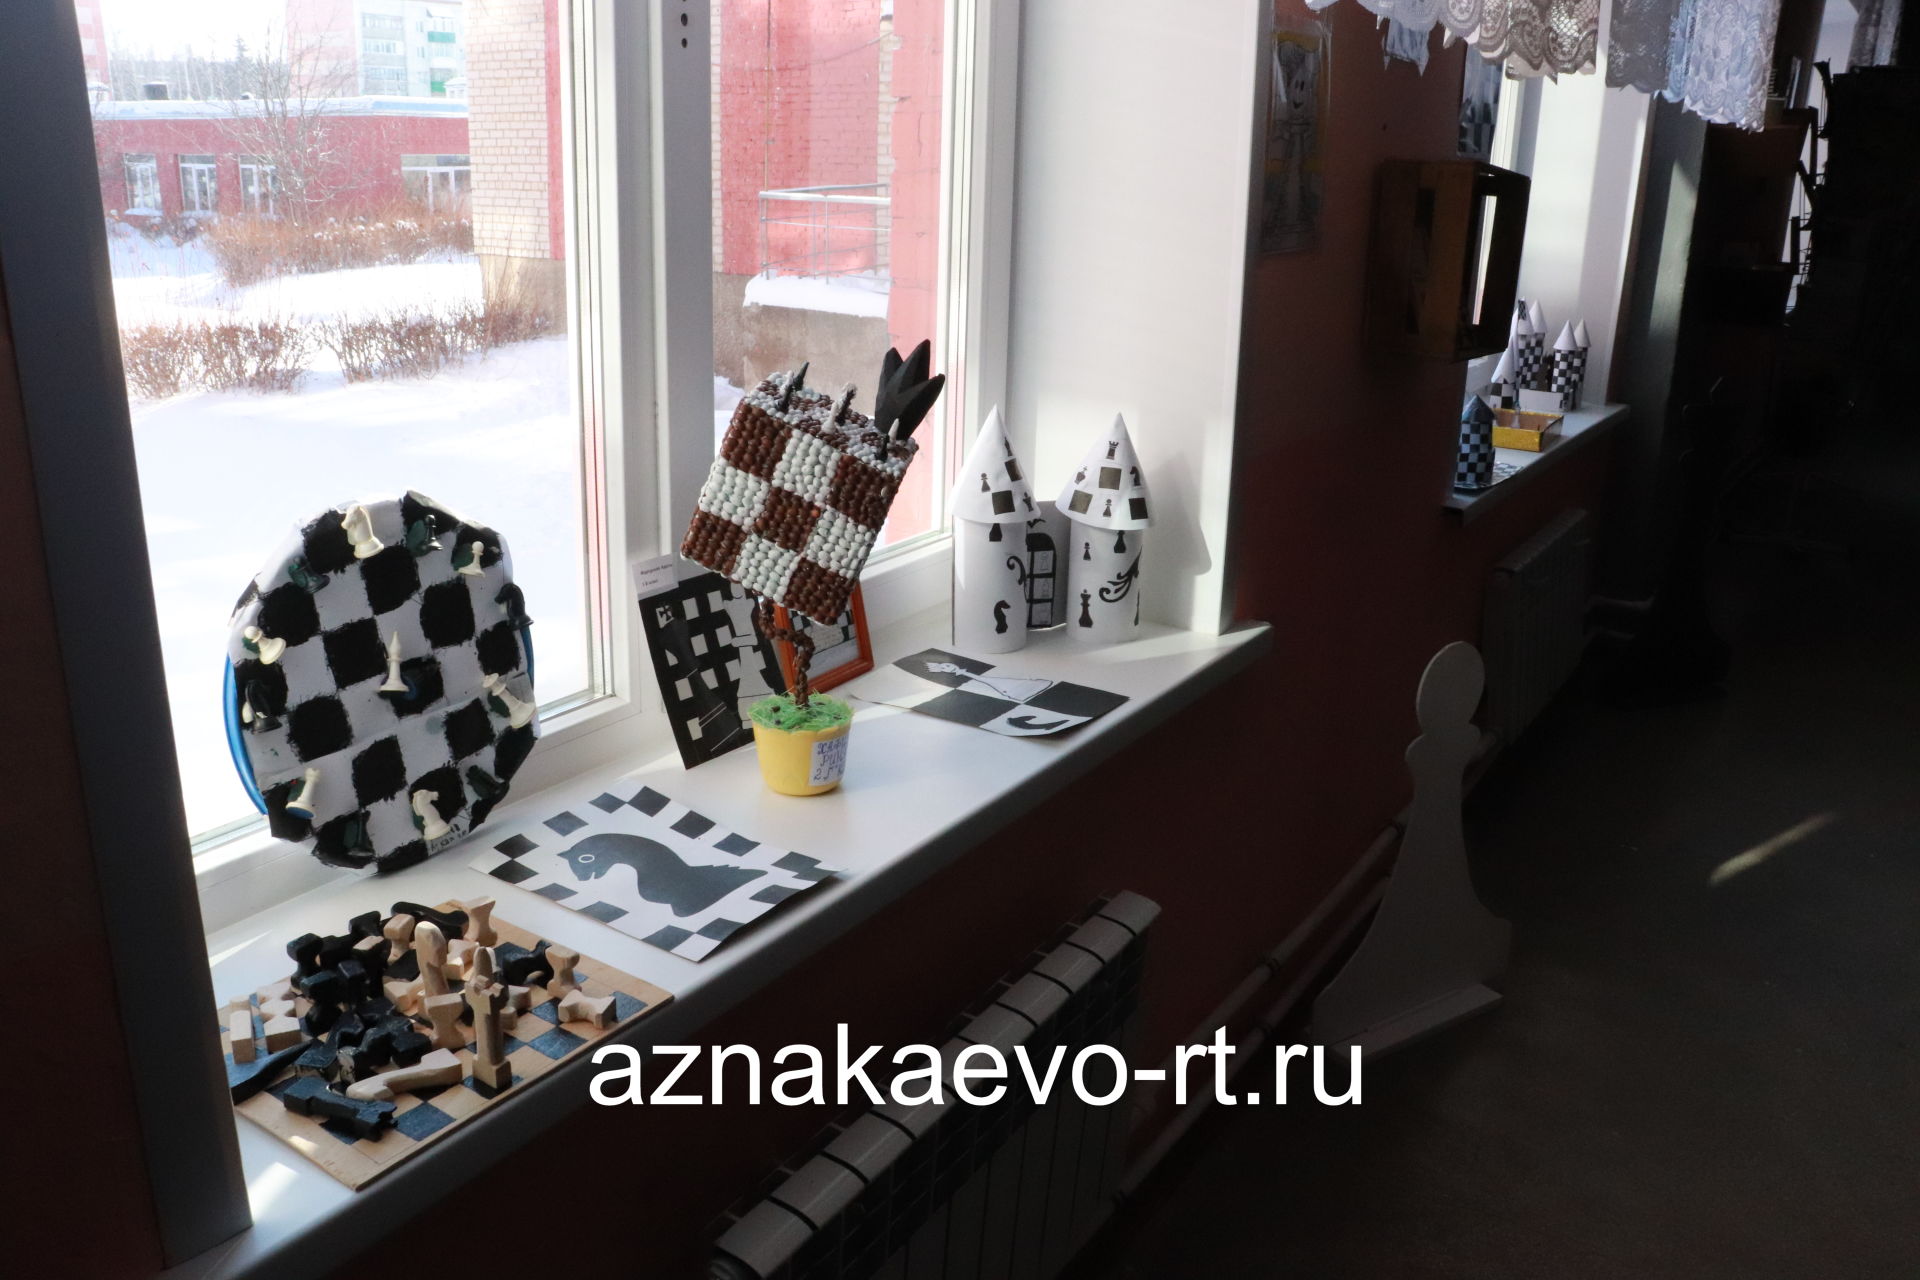 Азнакаевским учащимся открывается путь в большие шахматы